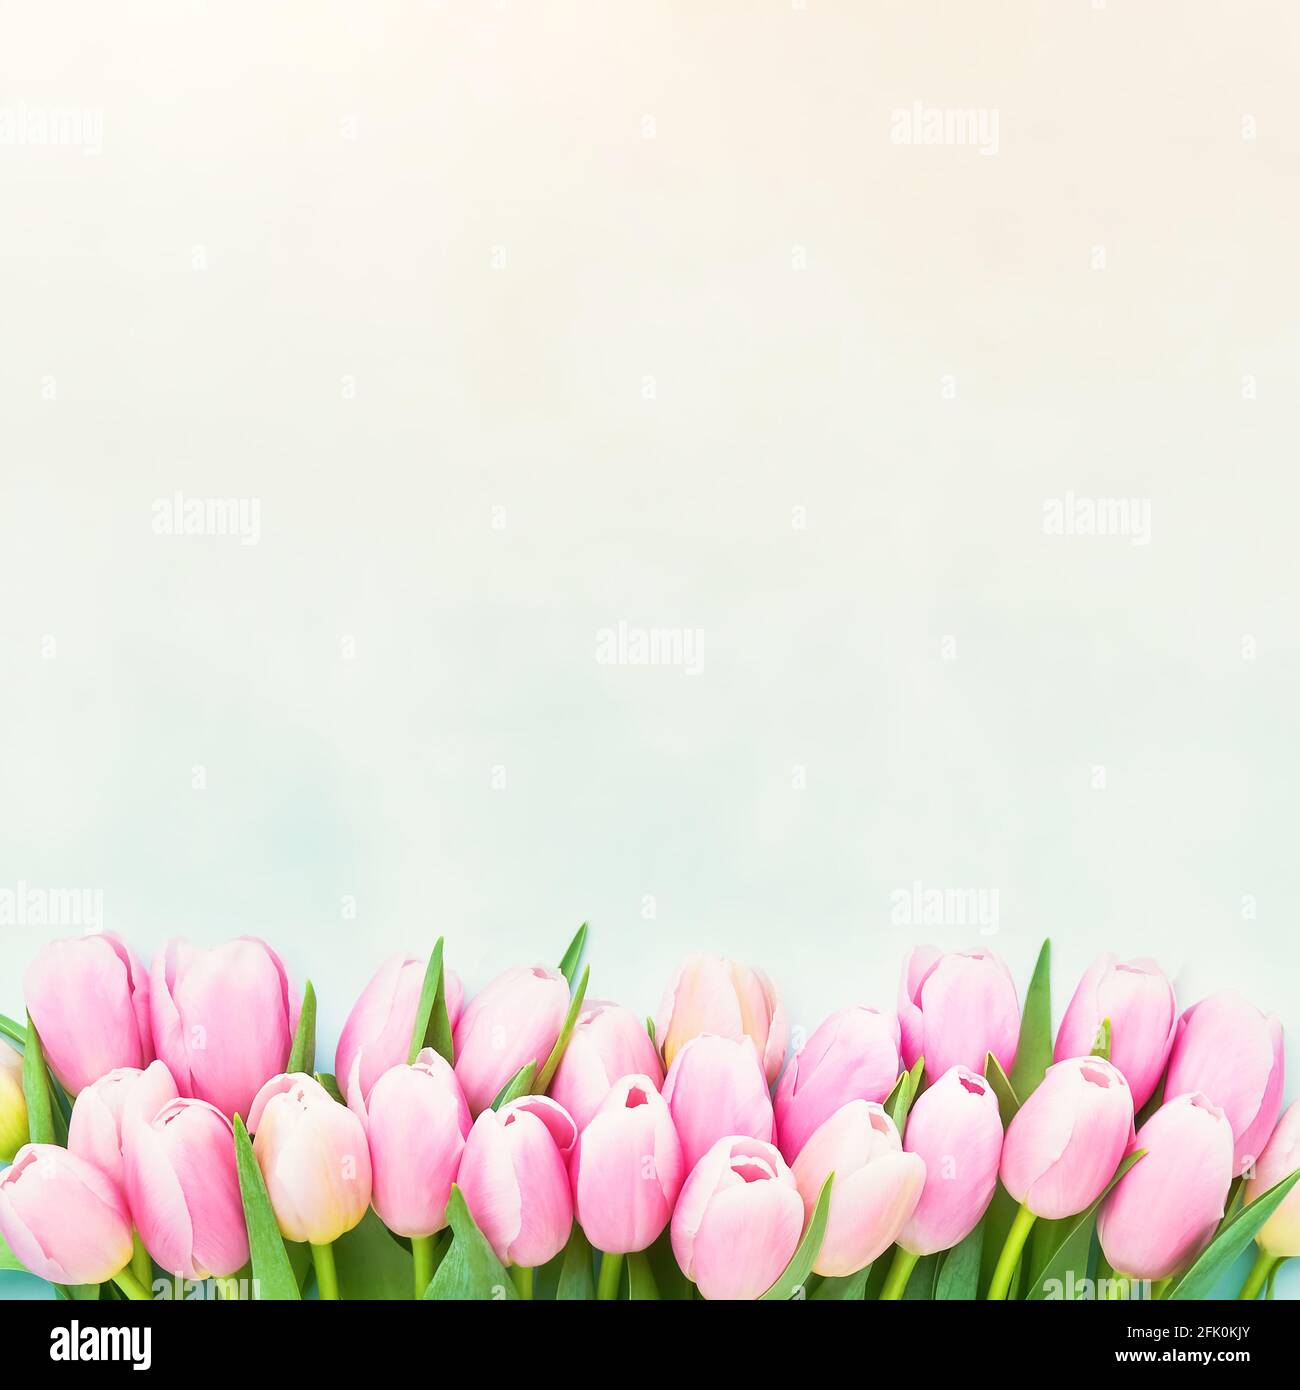 Rand von rosa Tulpenblüten auf einem pastellfarbenen Hintergrund, selektiver Fokus. Muttertag, Bachelorette, Geburtstagsfeier Konzept. Draufsicht, Kopierbereich fo Stockfoto